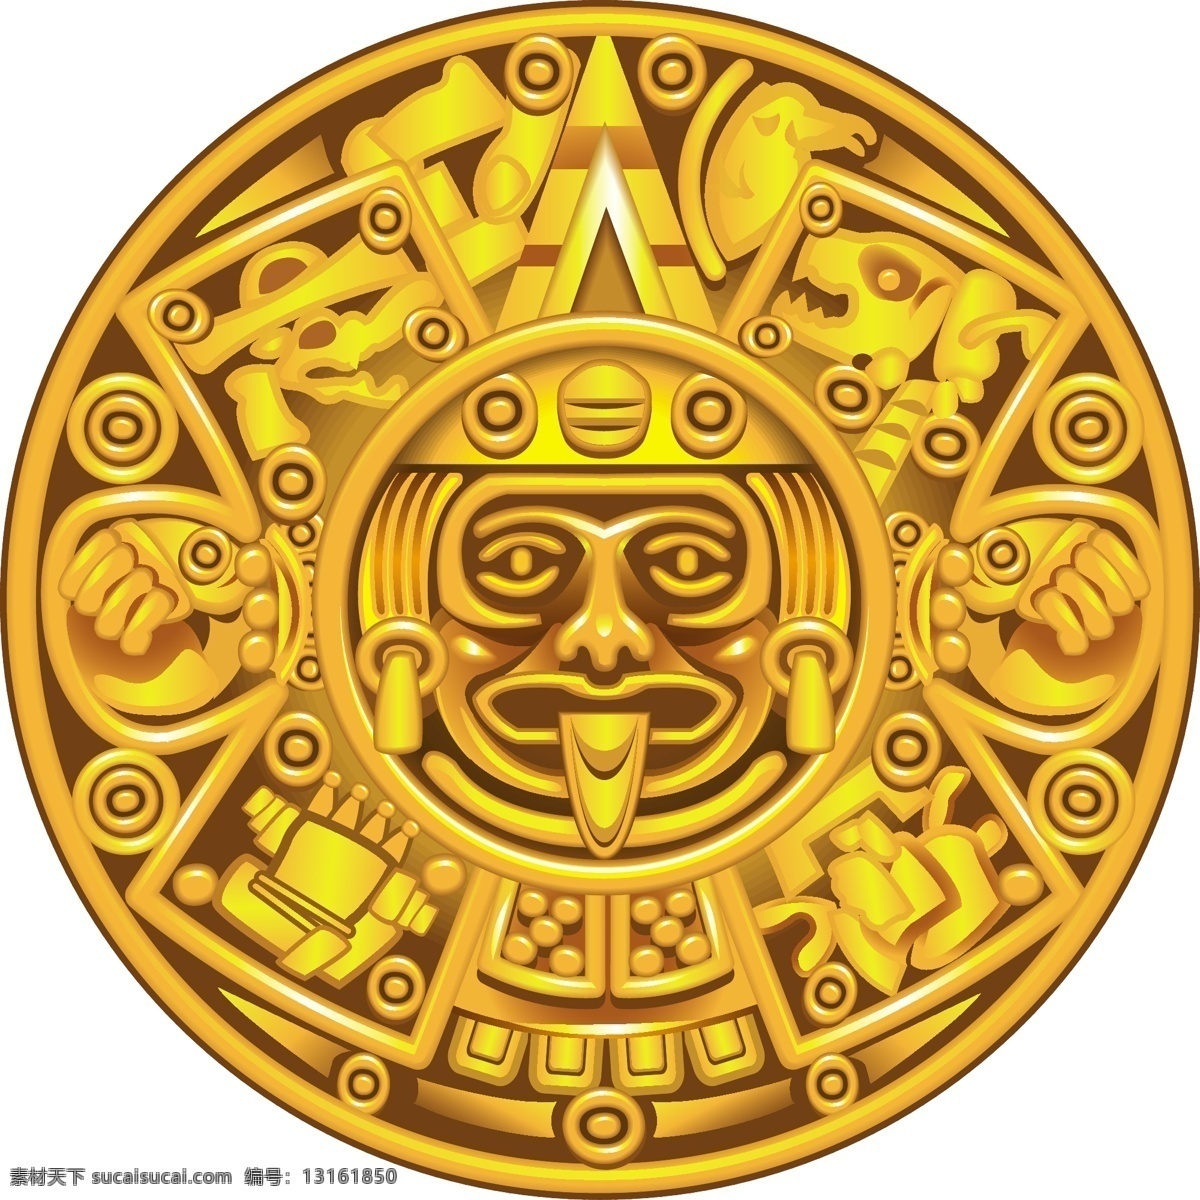 玛雅文化 玛雅符号 玛雅纹身 玛雅 古代 古老 手绘 图腾 考古图案 太阳 法盘 金色 玛雅历 平面素材